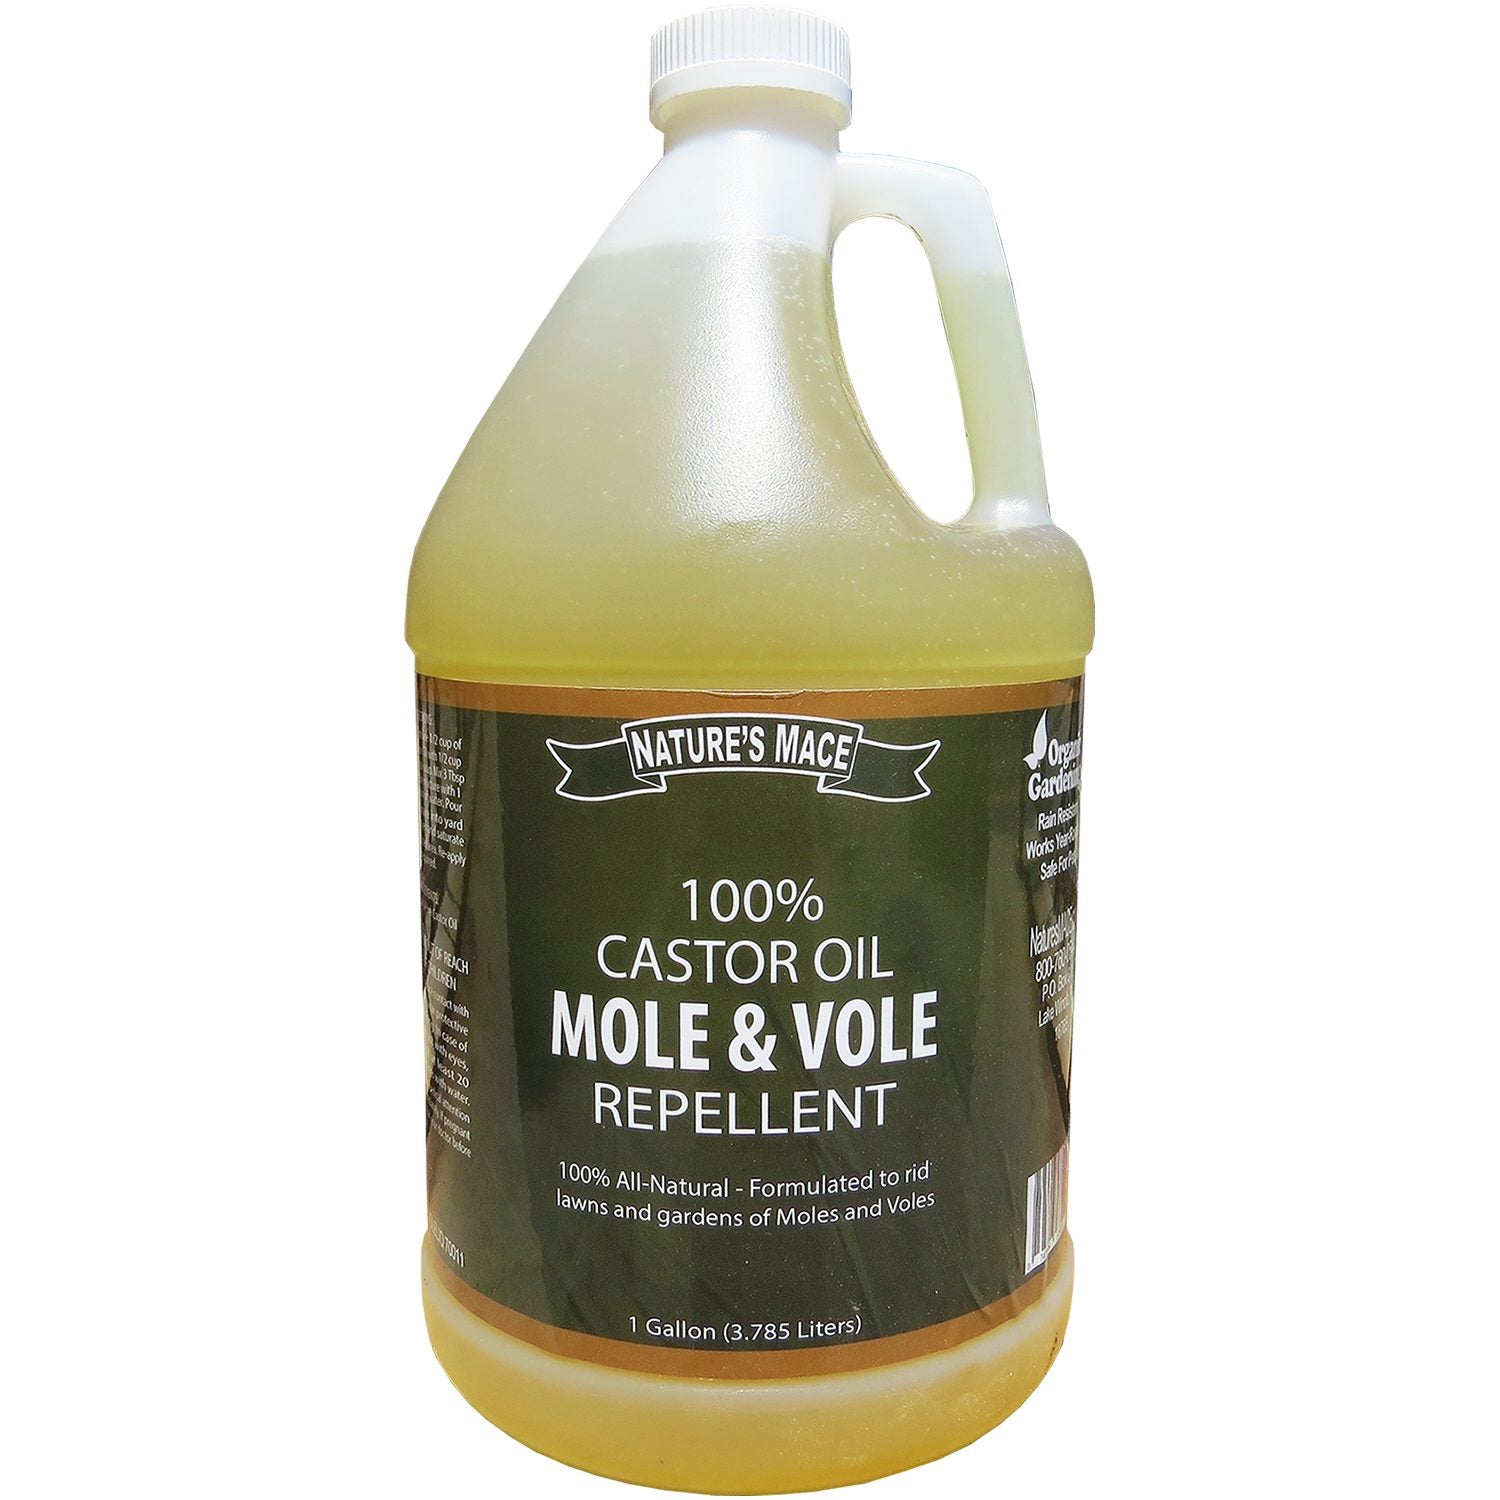 Mole & Vole Repellent 1 Gallon Castor Oil